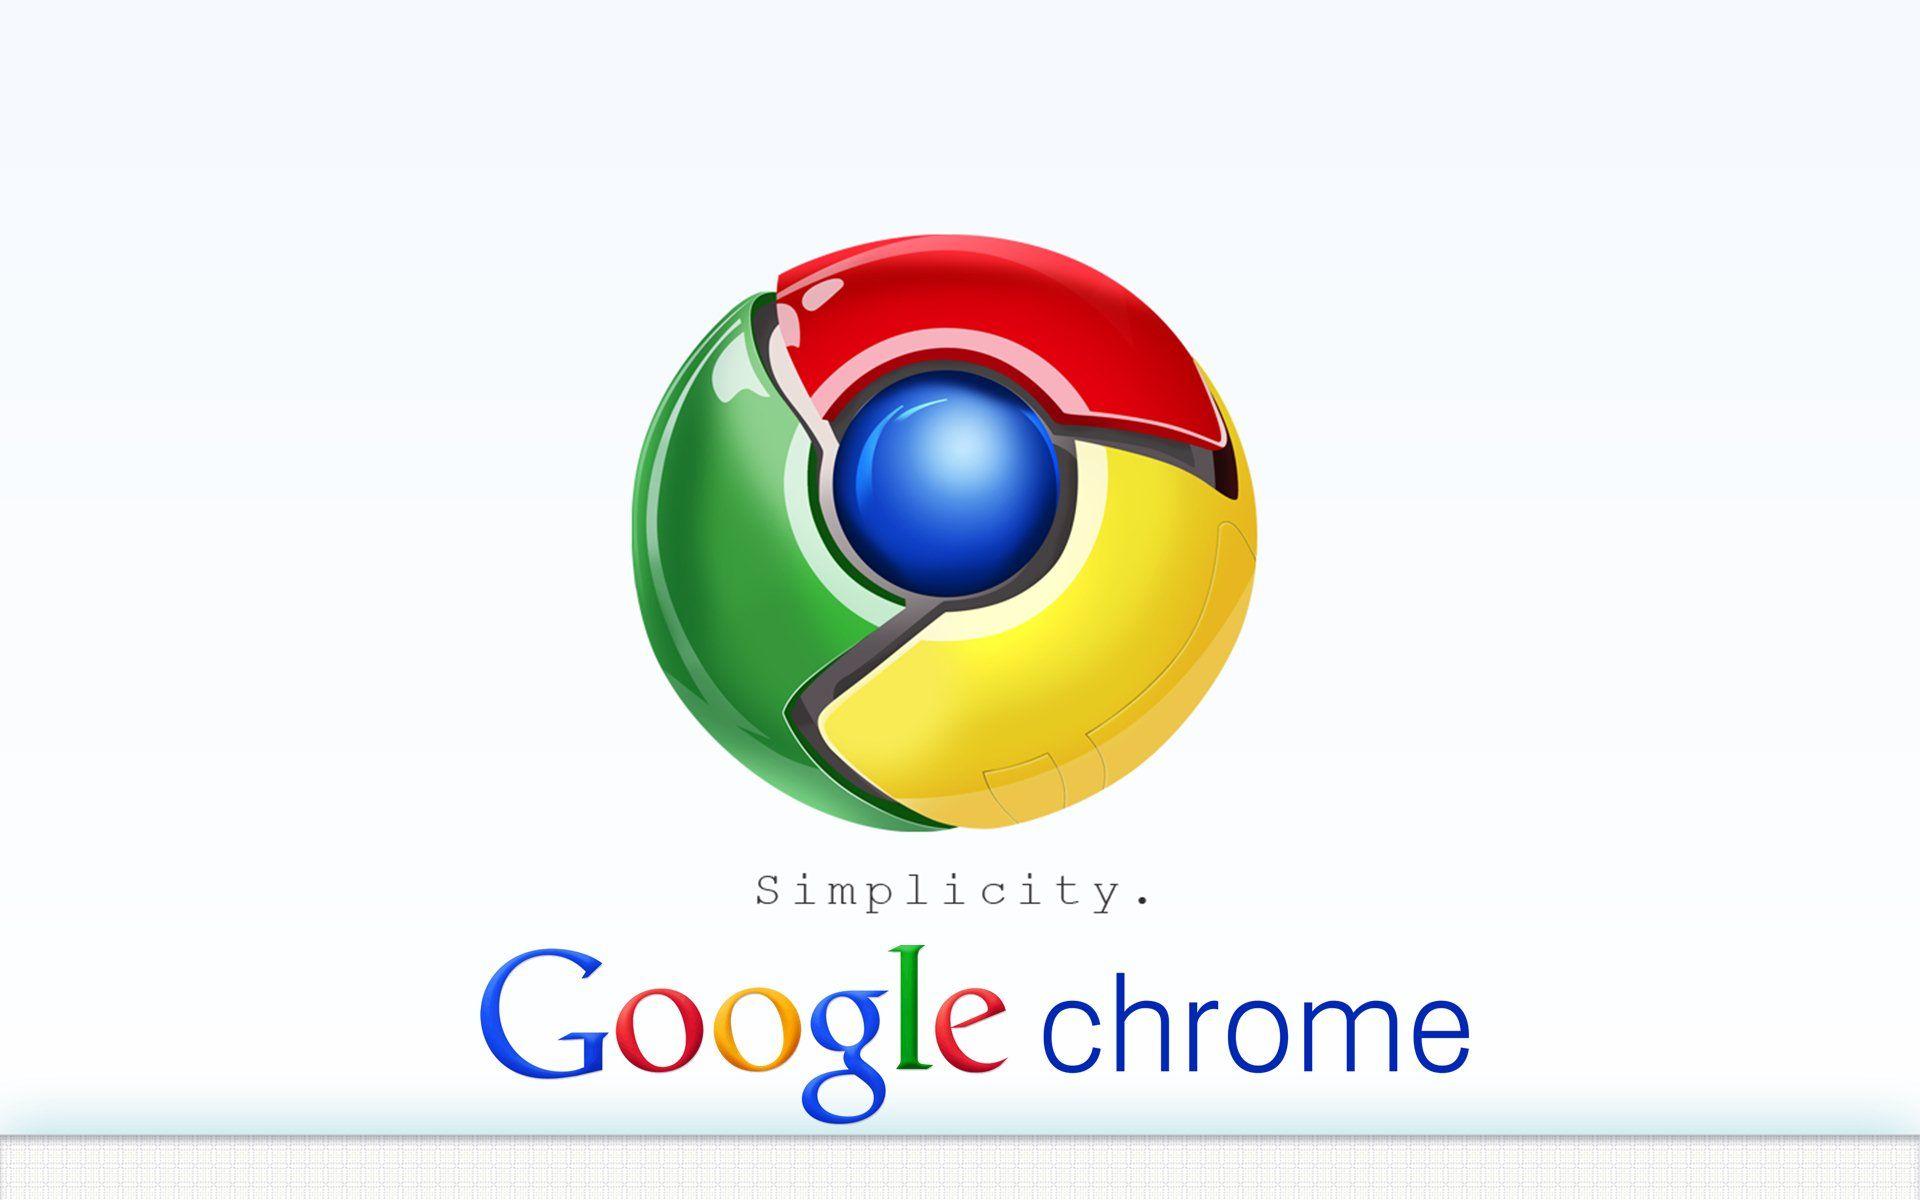 Google Chrome Downloadable Logo - Google chrome Logos